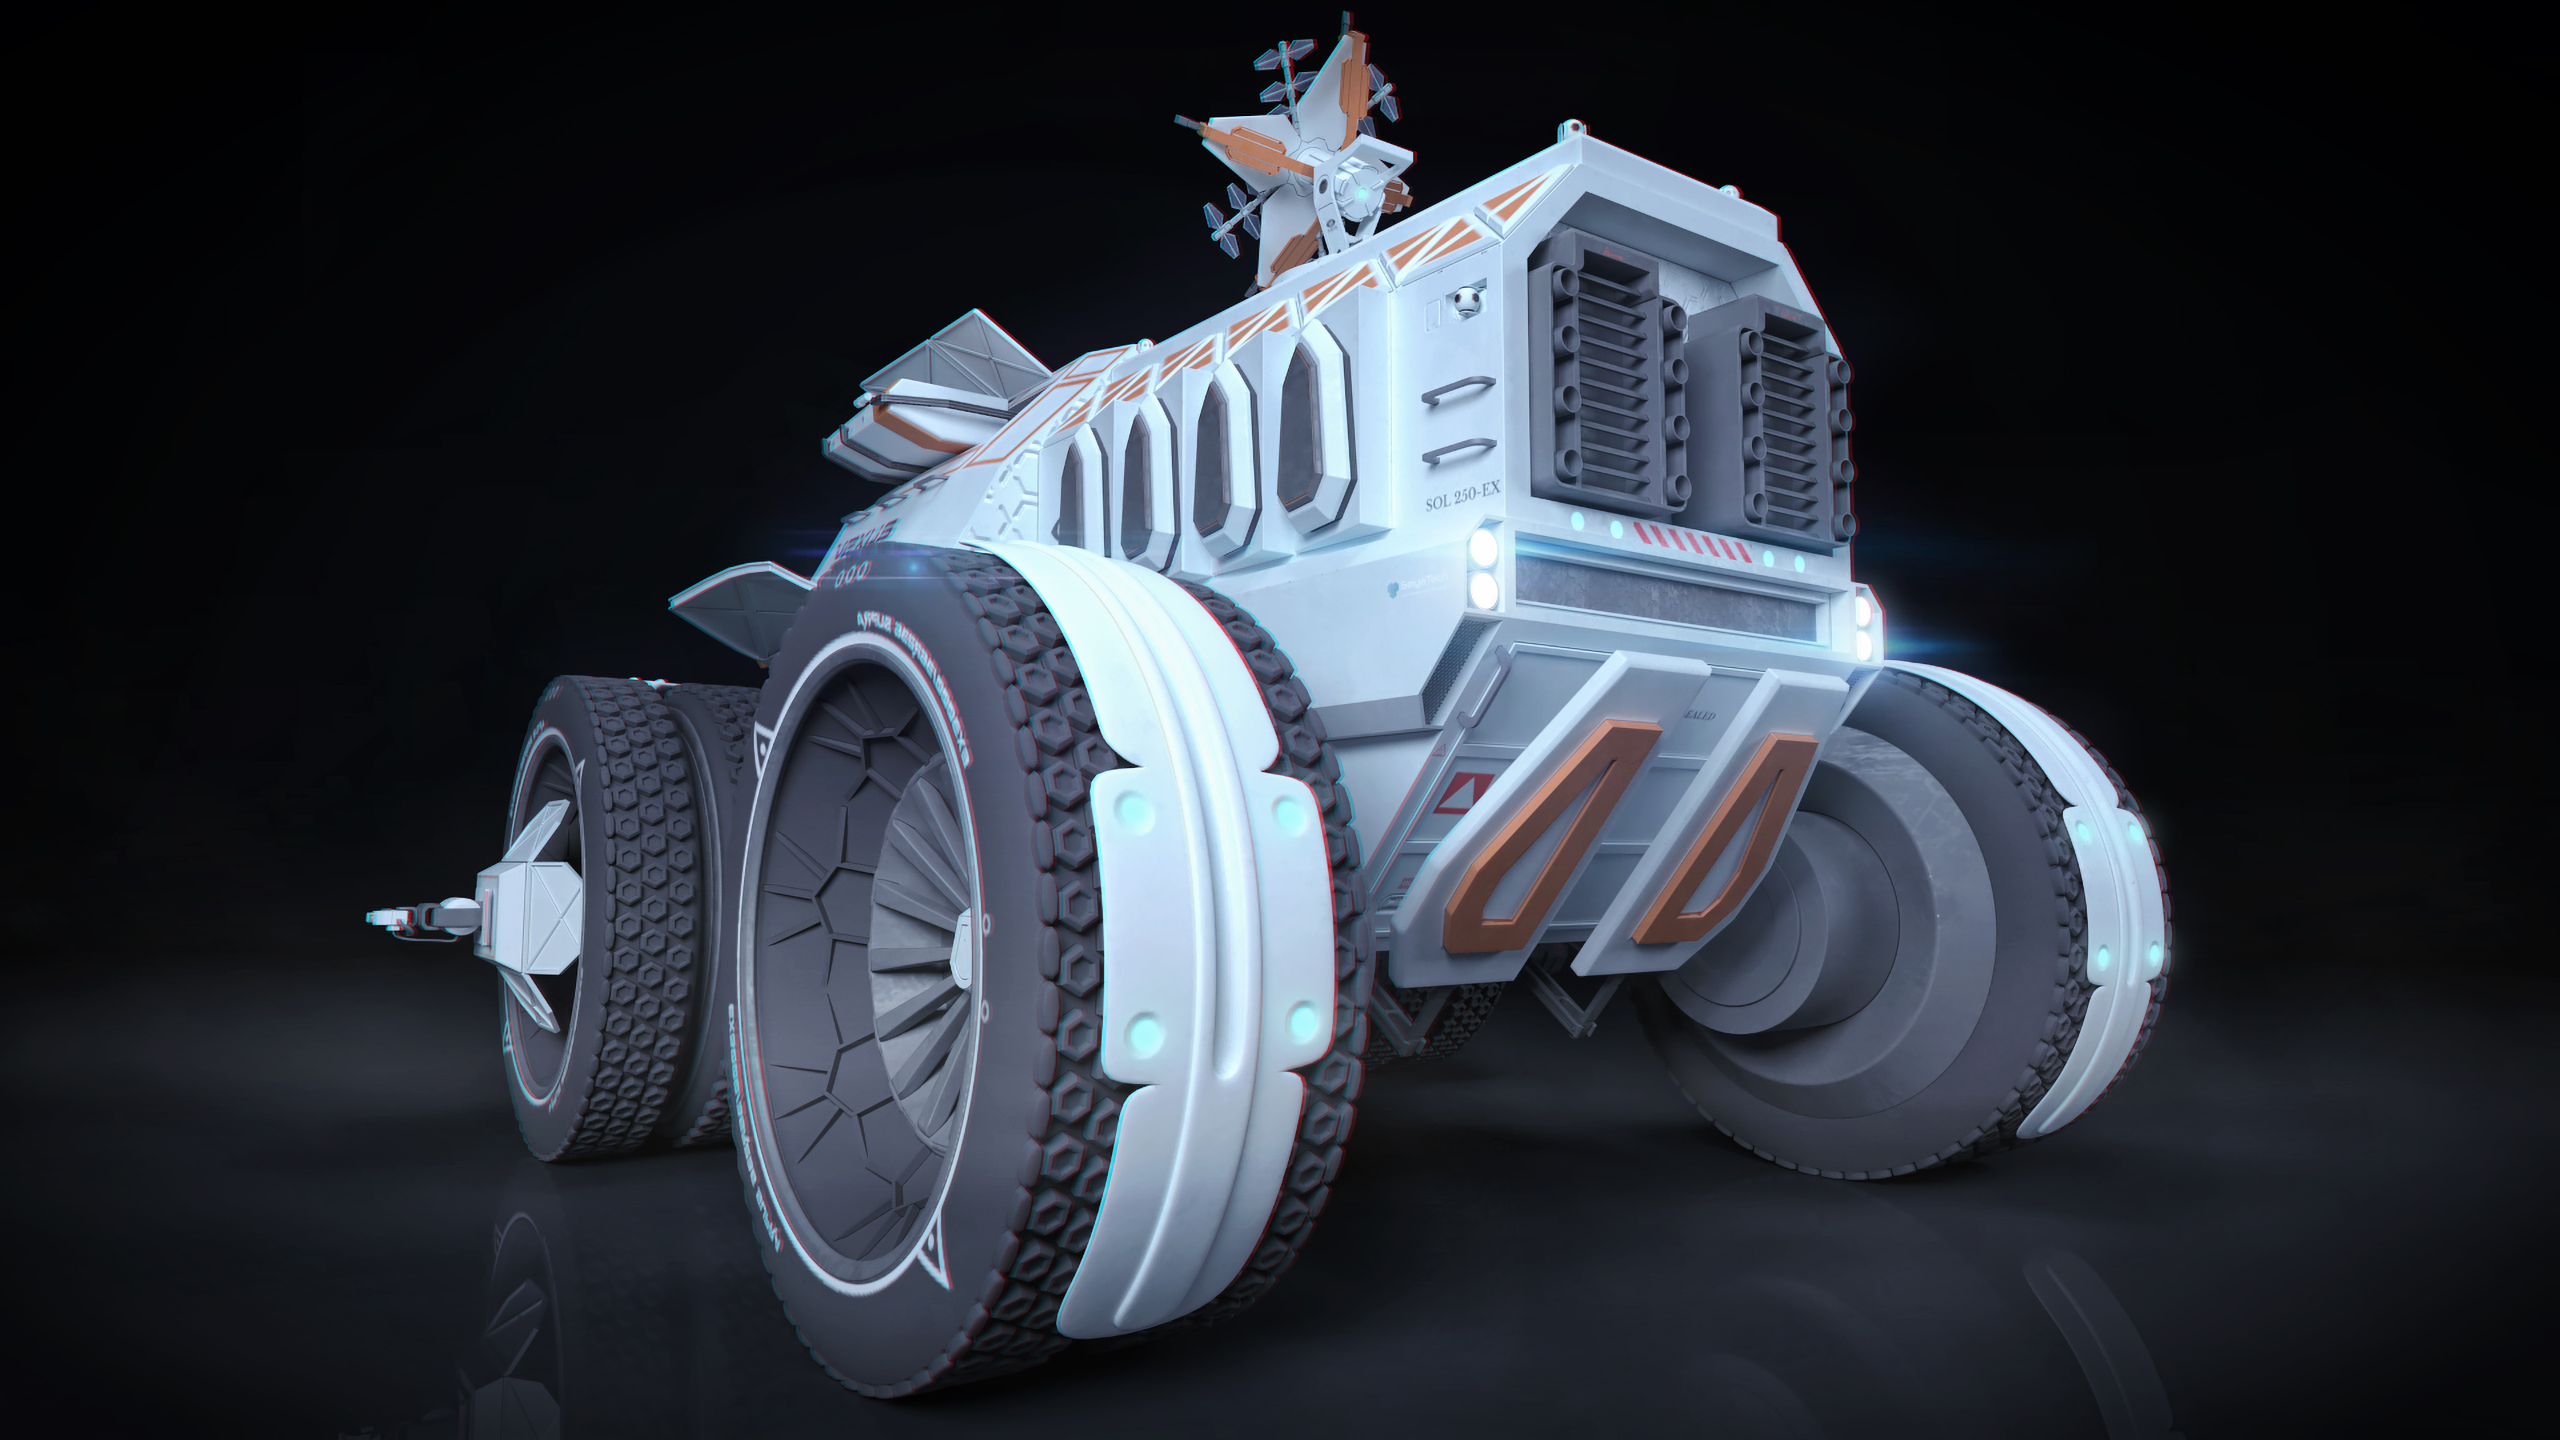 Space Rover 2020 Challenge - Vexus Sol 250-ex